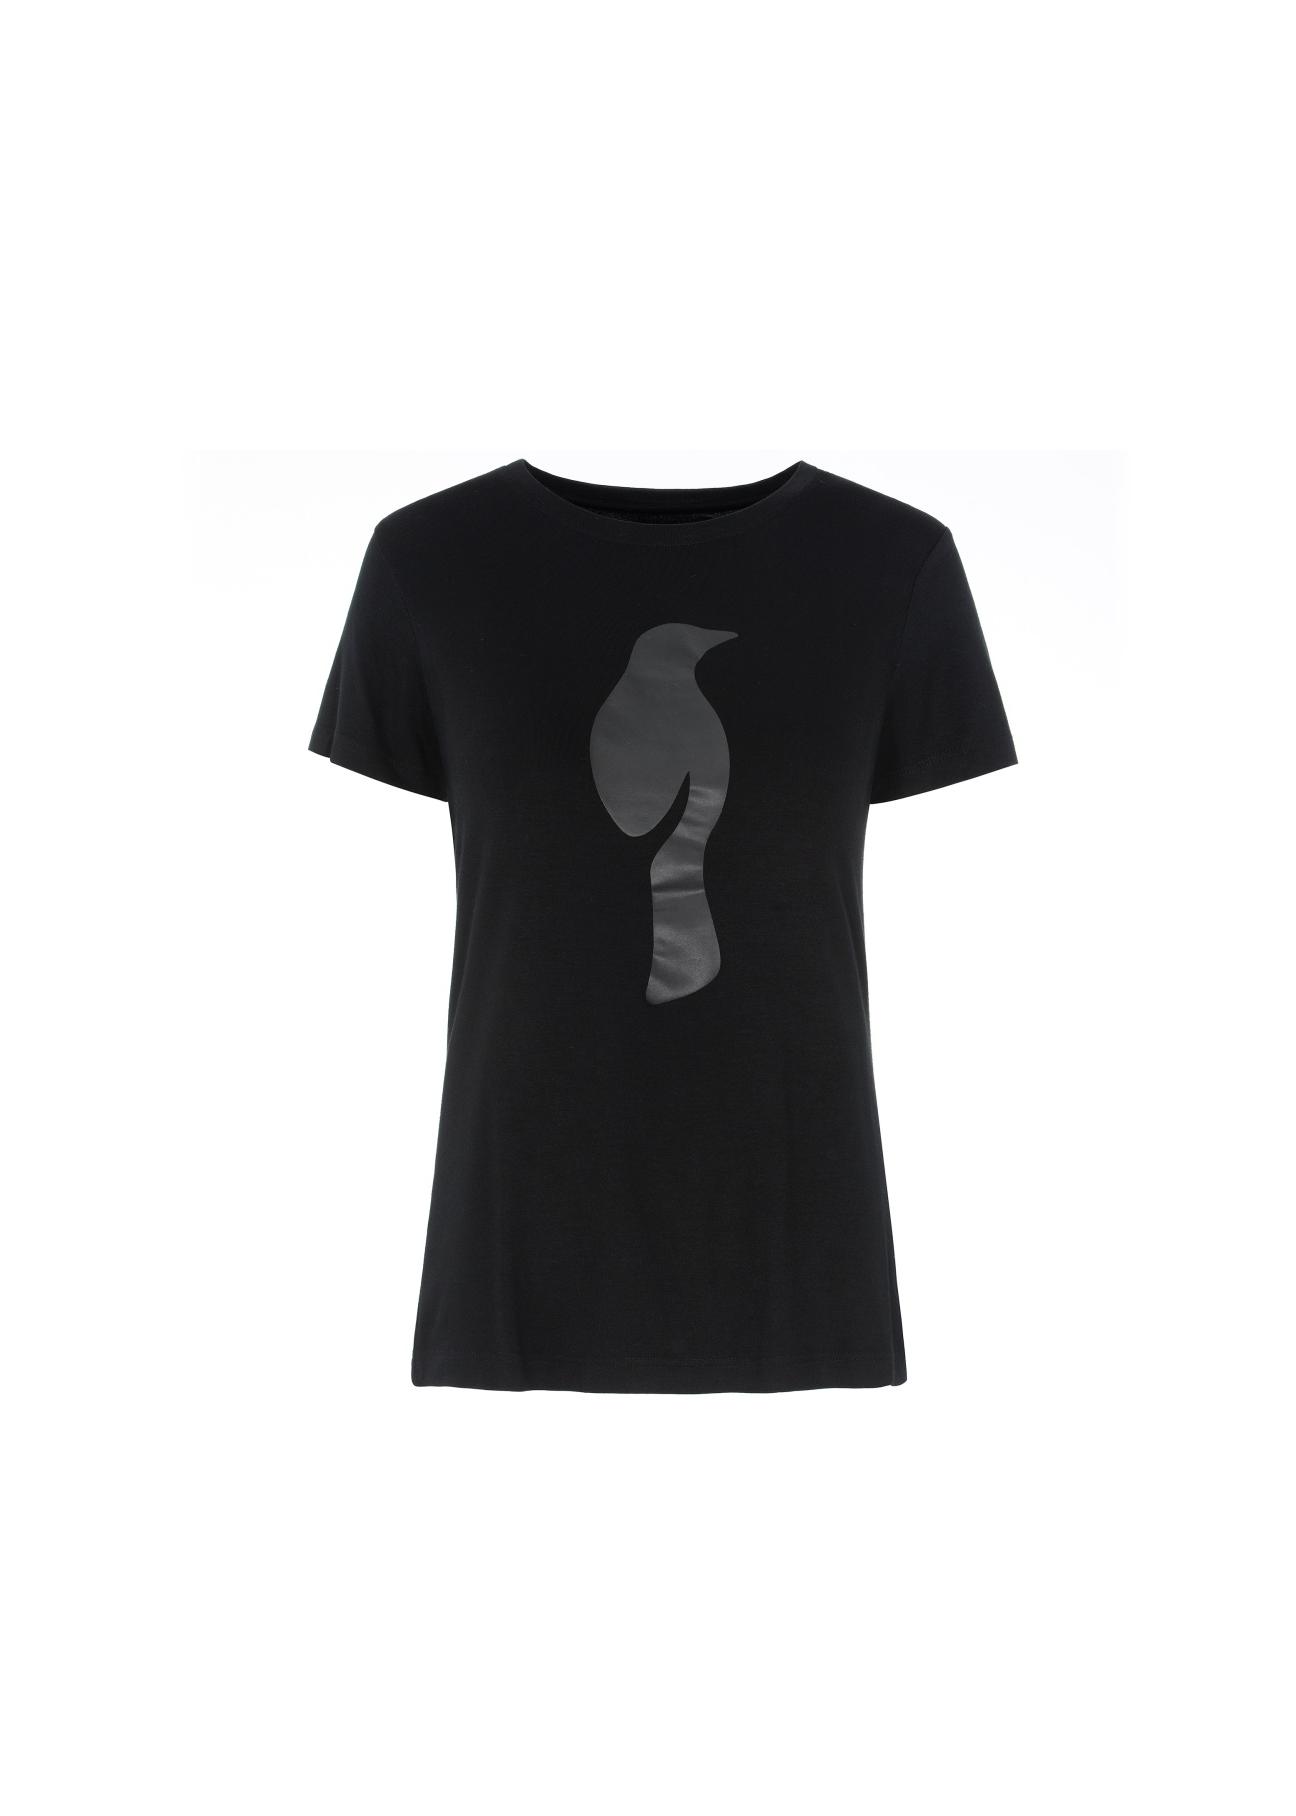 Czarny T-shirt damski z wilgą TSHDT-0053-99(W20)